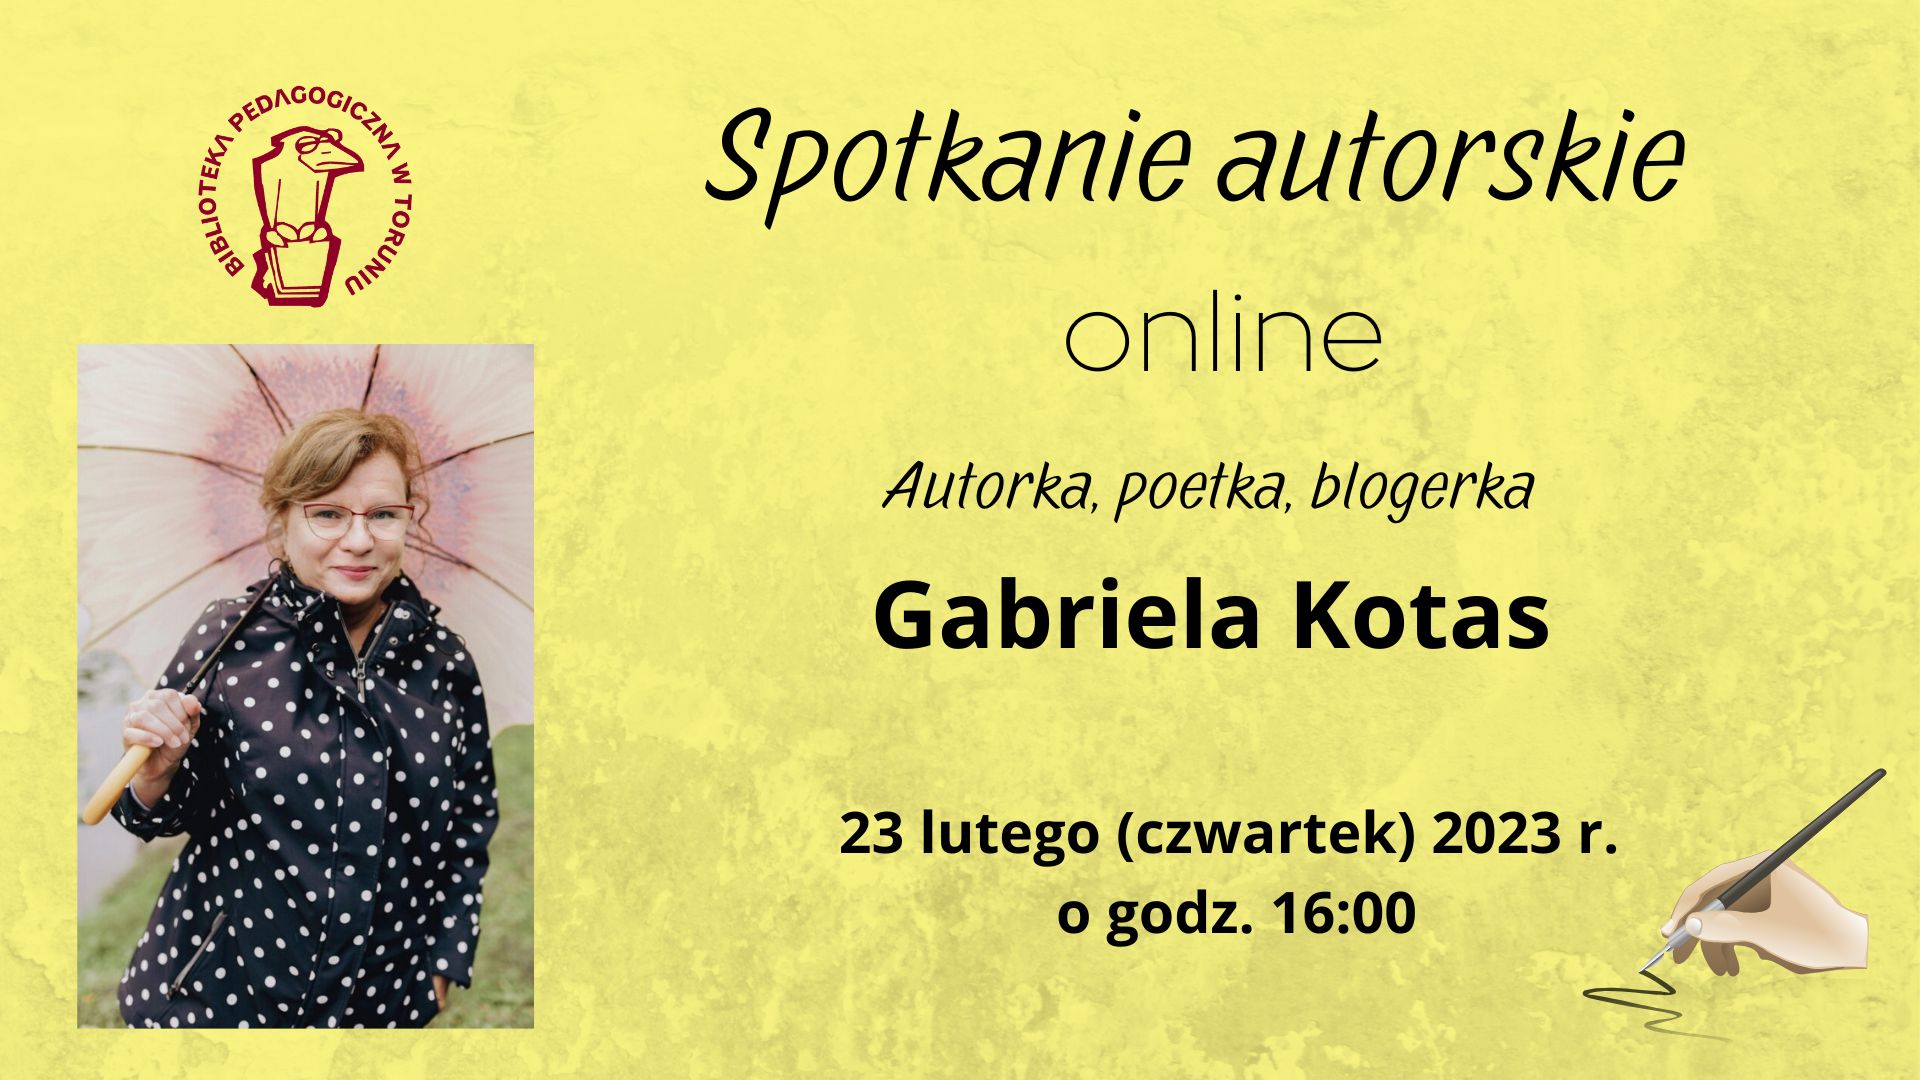 Zaproszenie na spotkanie autorskie online z poetką, blogerką, autorką książek dla dzieci i dorosłych – Panią Gabrielą Kotas, które odbędzie się 23 lutego 2023 r. o godzinie 16:00.